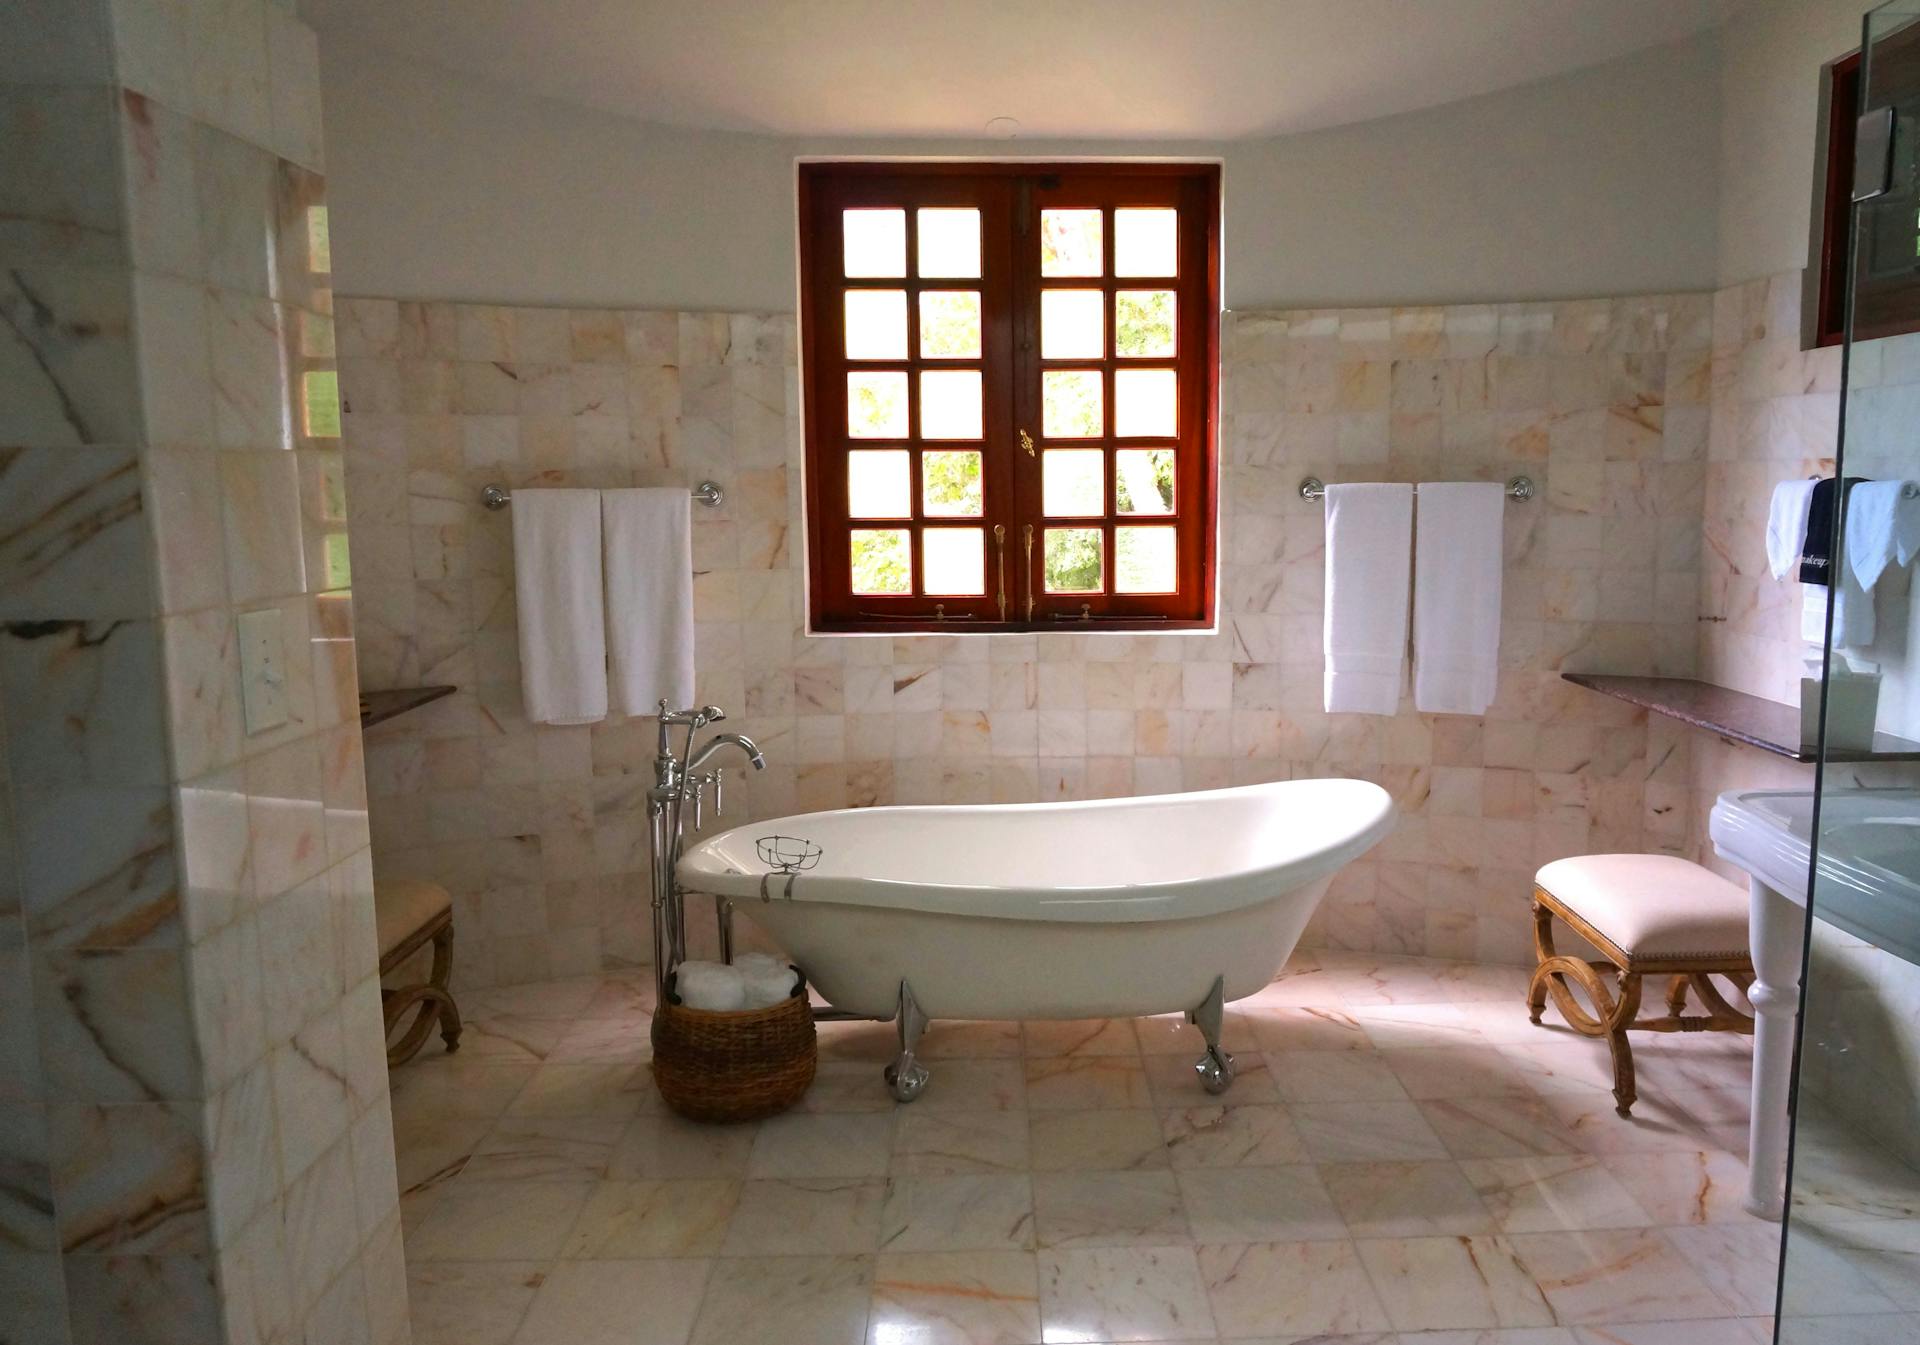 Une salle de bain marron et blanche | Source : Pexels